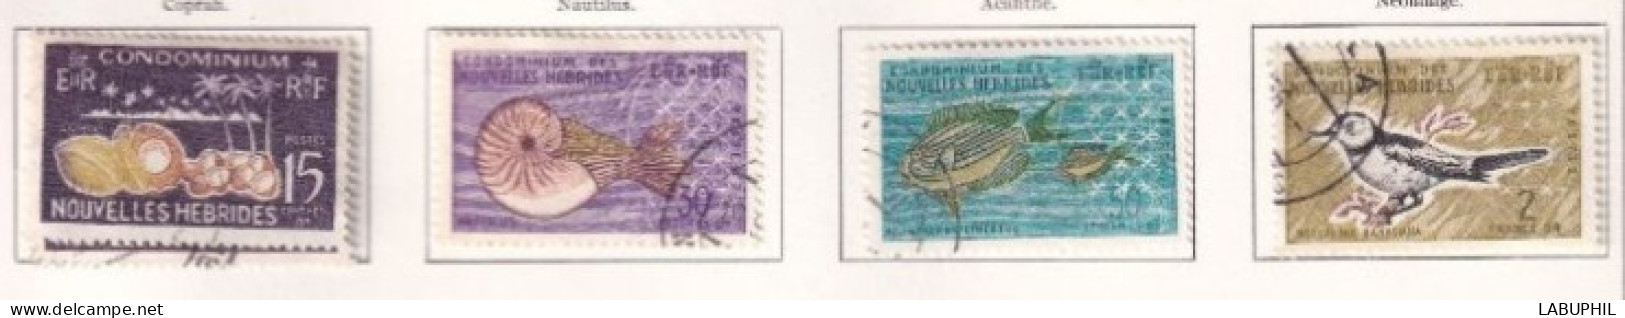 NOUVELLES HEBRIDES Dispersion D'une Collection Oblitéré Et Mlh  1963 Faune - Usati